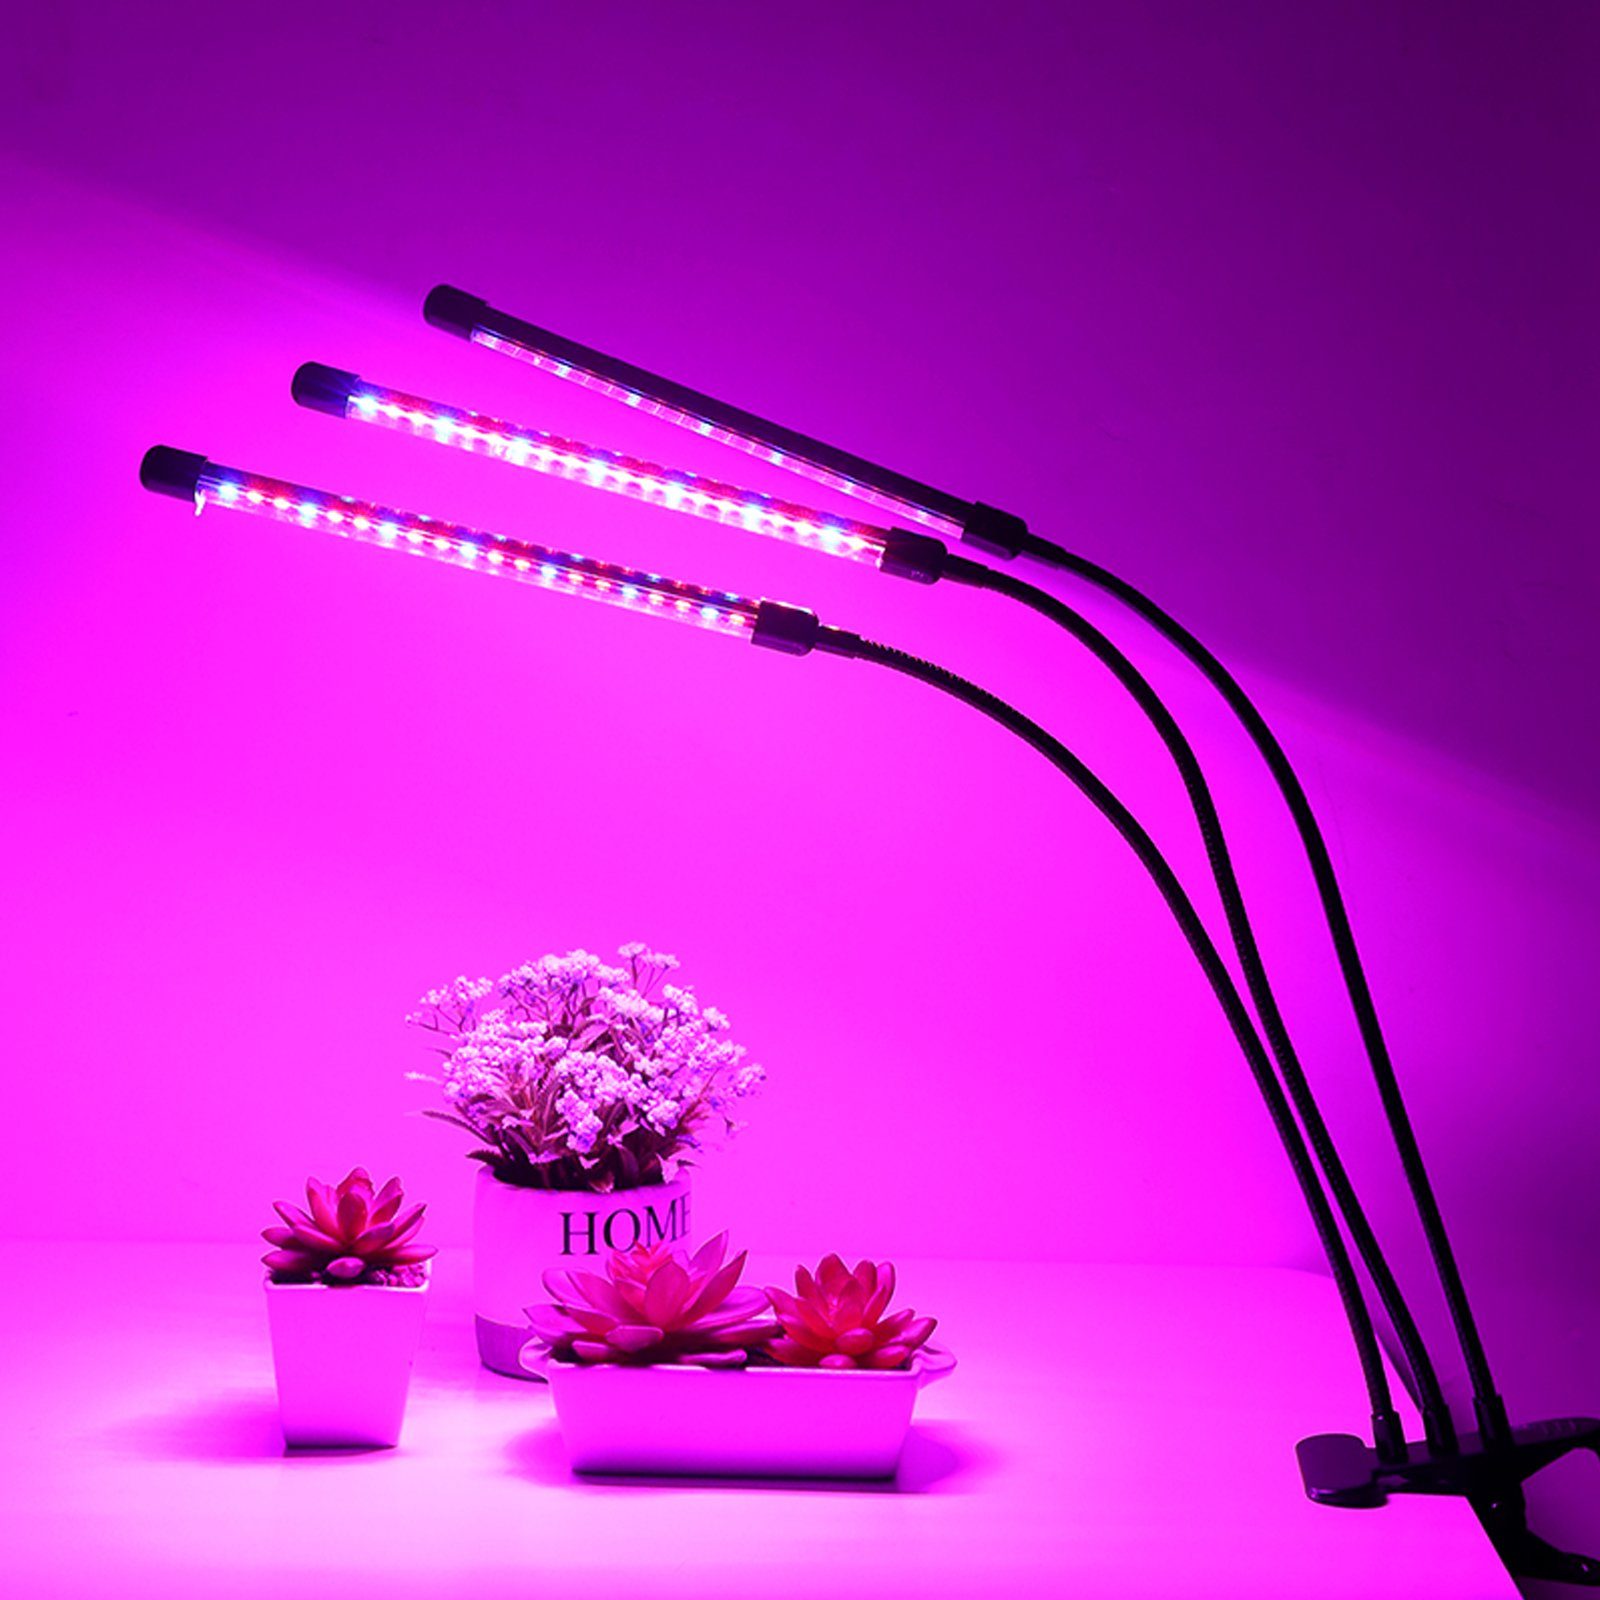 Vollspektrum Helligkeitsstufen Wachstumslampe, Licht Dimmbar TolleTour 10 Kopf Grow 3 3 Modus, Light Pflanzenlampe LED 30W Pflanzenlicht mit